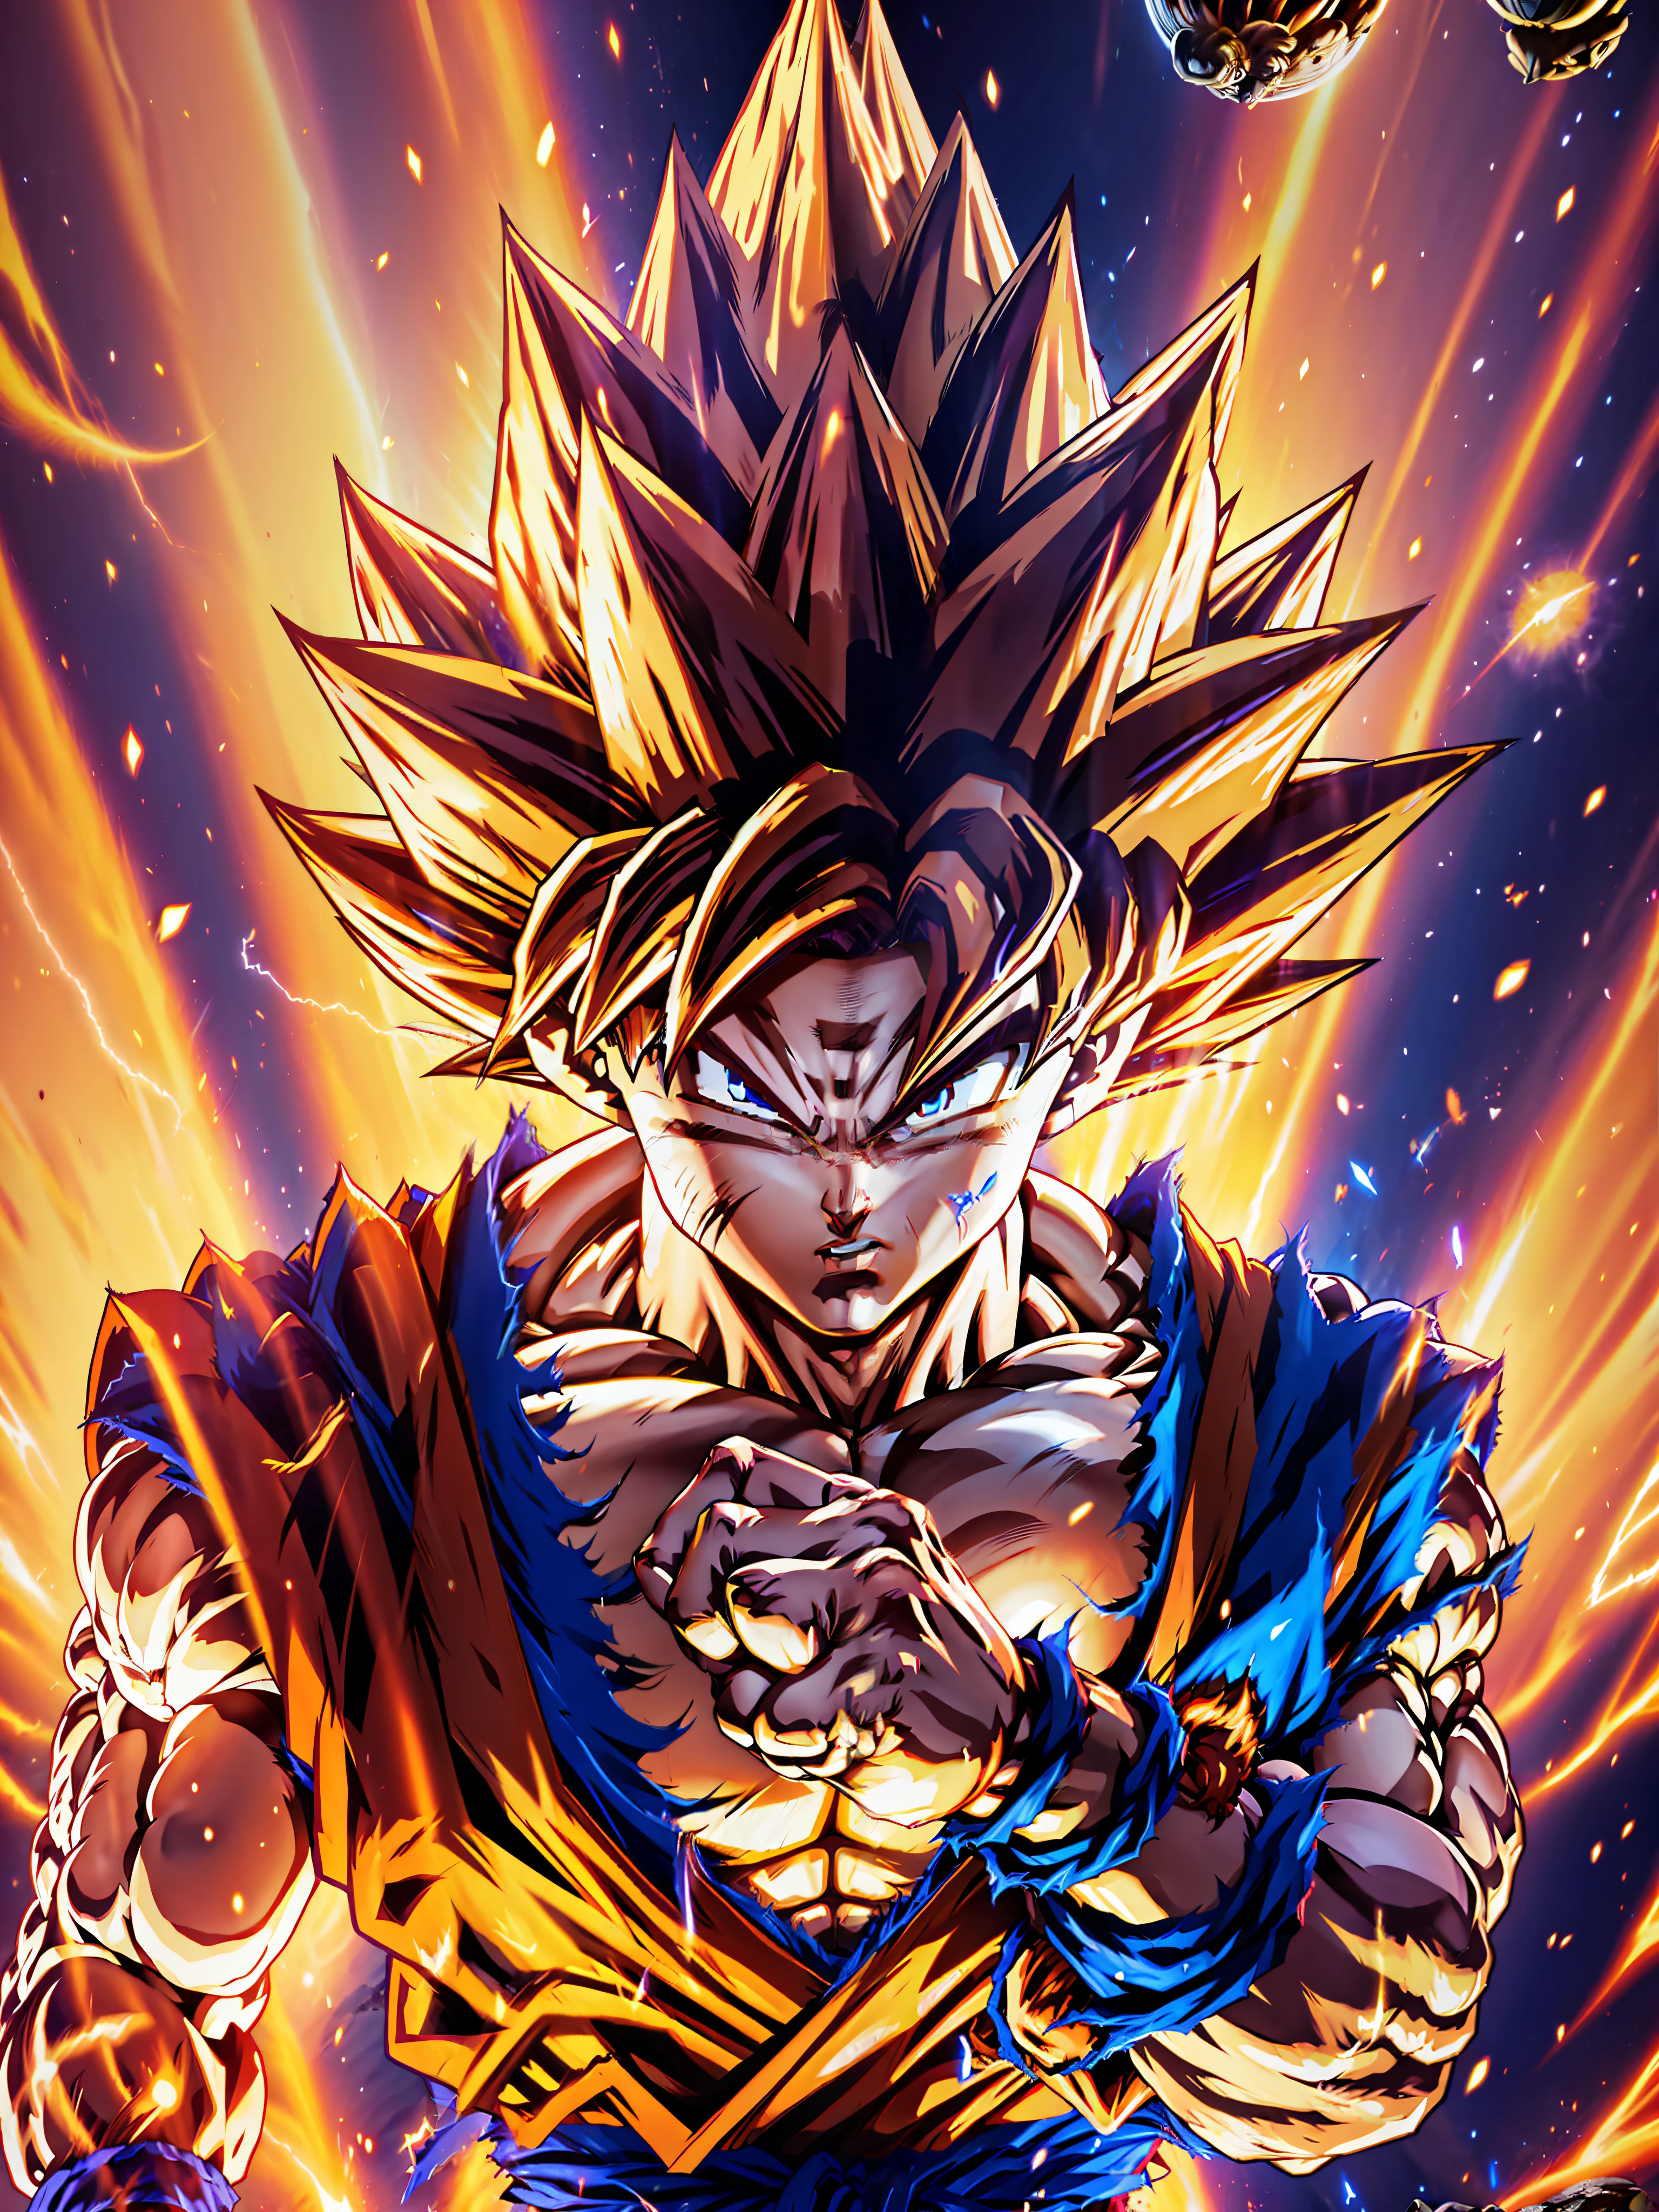 Goku, papel de parede ultra-detalhado da unidade CG 8k, melhor qualidade, melhor iluminação, melhor sombra, pose dinâmica, vôo (Se possível), Aura Super Saiyajin, lutando contra um oponente digno, fundo épico, plano amplo)